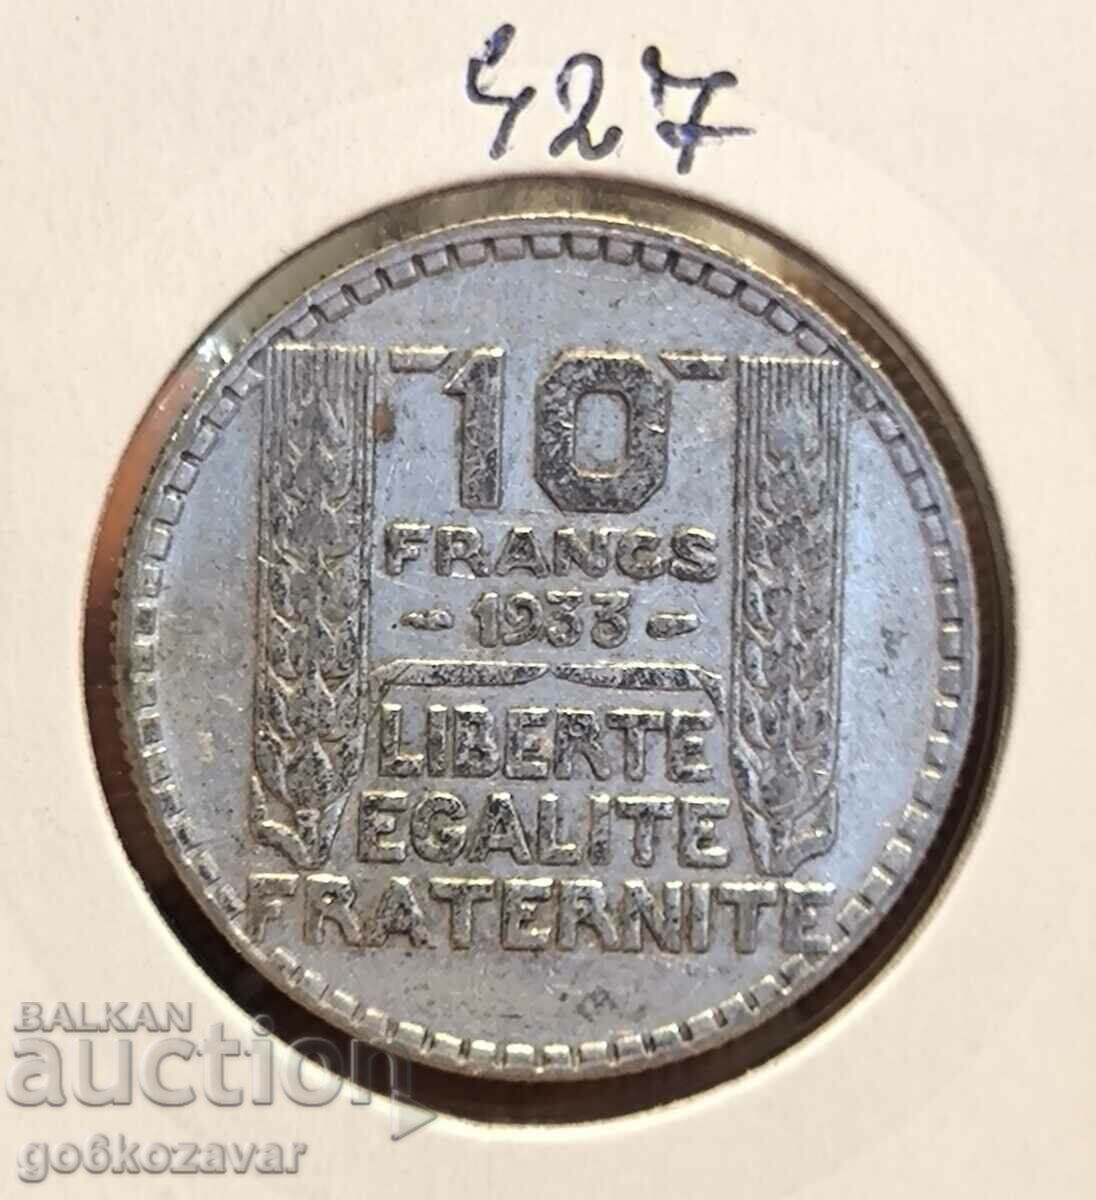 France 10 Francs 1933 Silver!